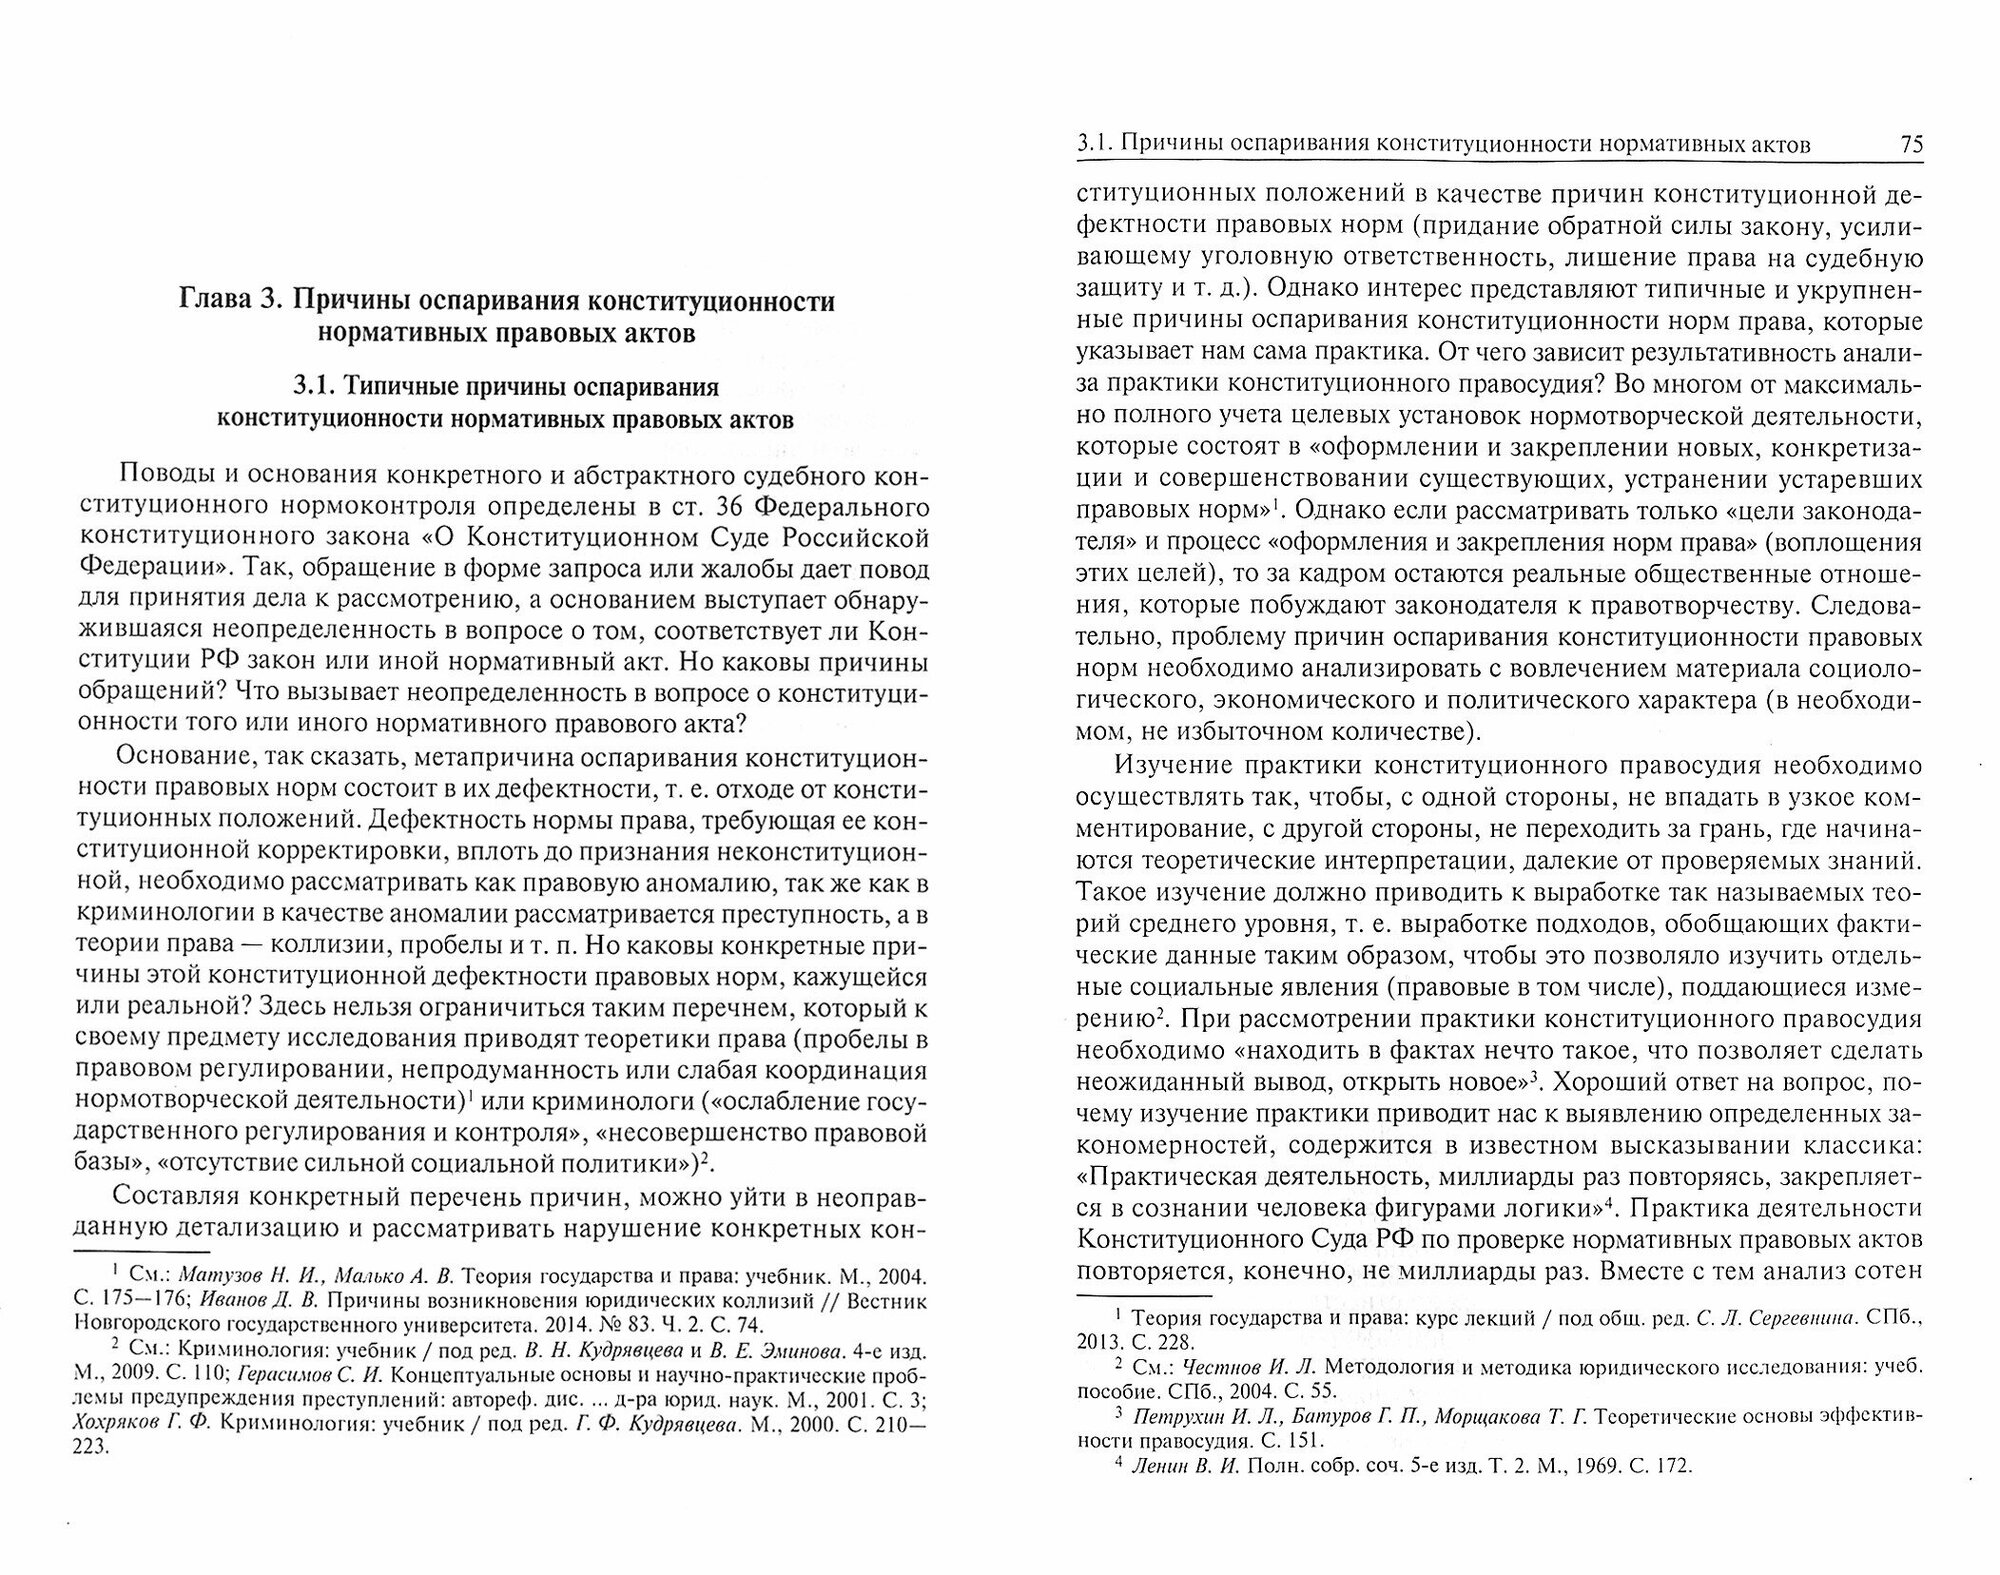 Судебный конституционный нормоконтроль: осмысление российского опыта - фото №2